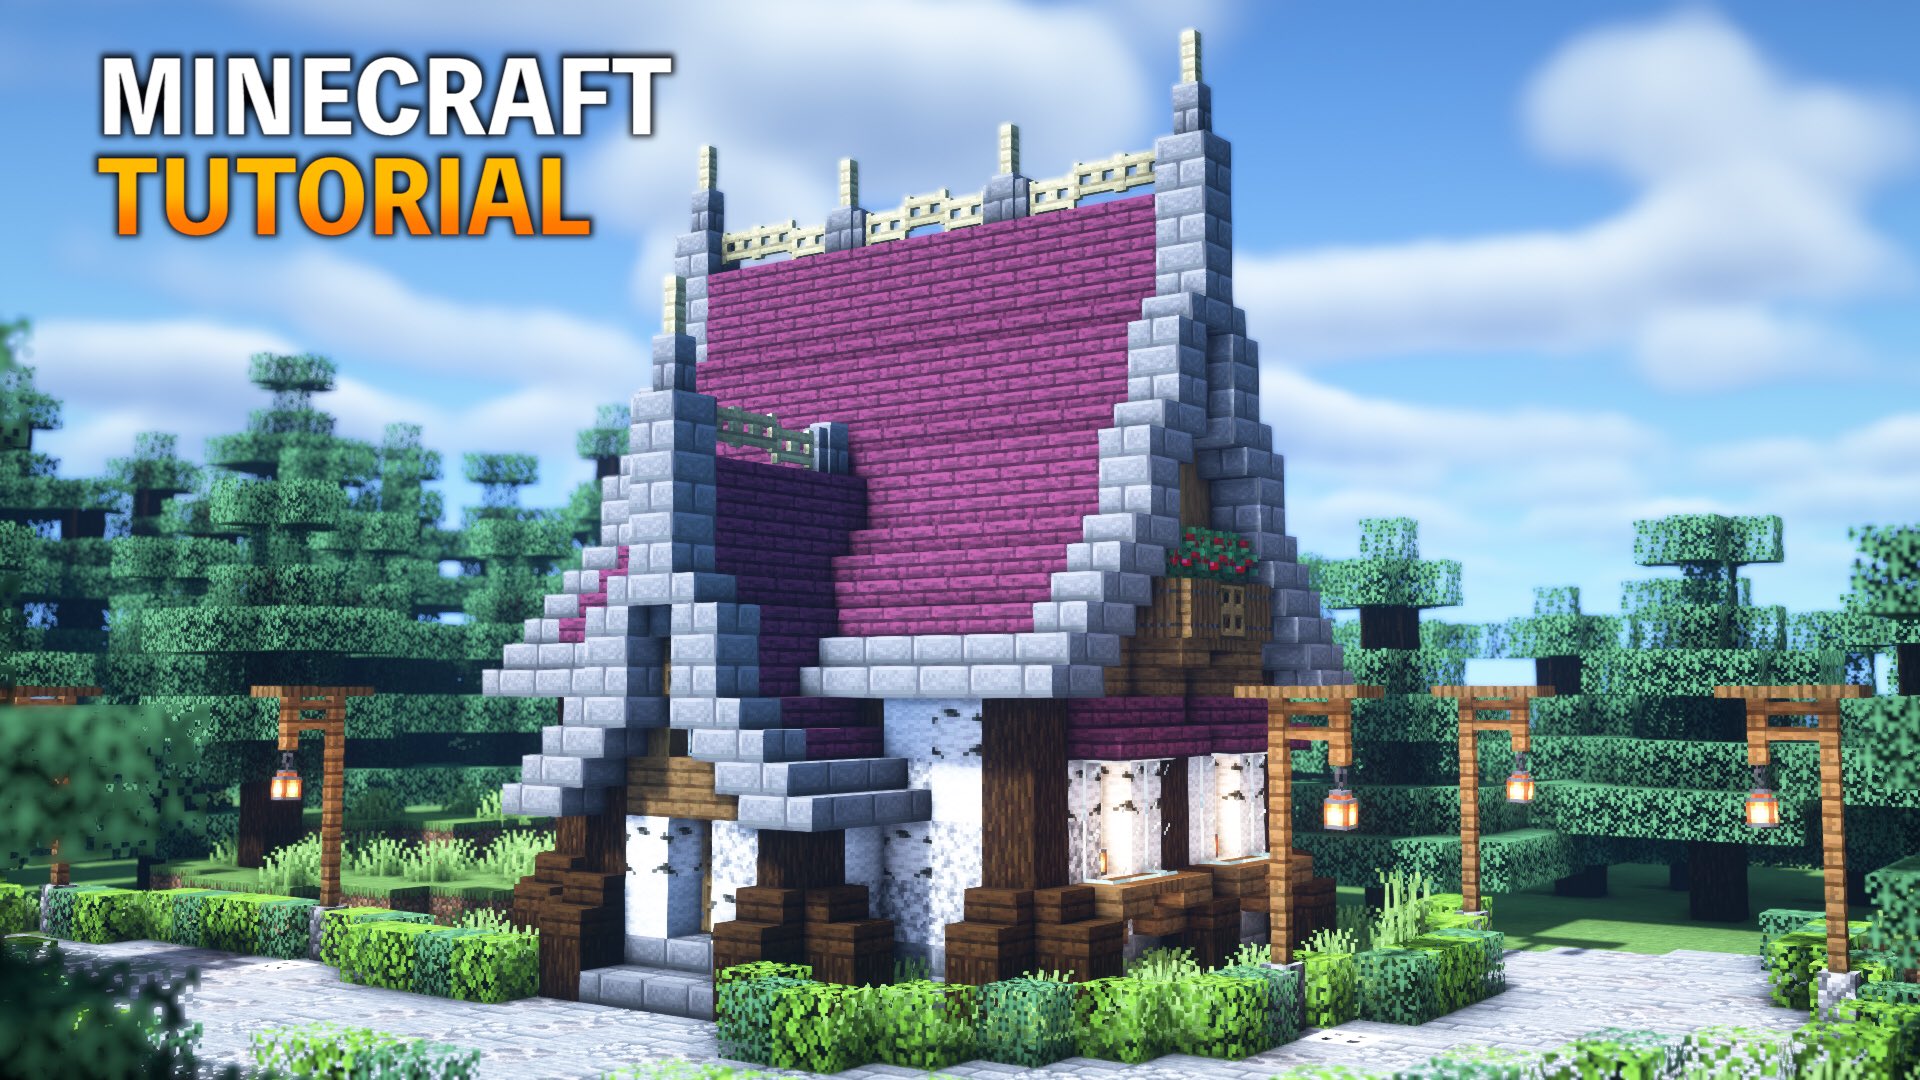 しょう Minecraft 在 Twitter 上 洋風な赤い屋根の家の作り方 マイクラ建築講座 How To Build A House With A Western Style Red Roof T Co Ijwh05ev3f Minecraft マインクラフト マイクラ T Co Btrmctcfjh Twitter